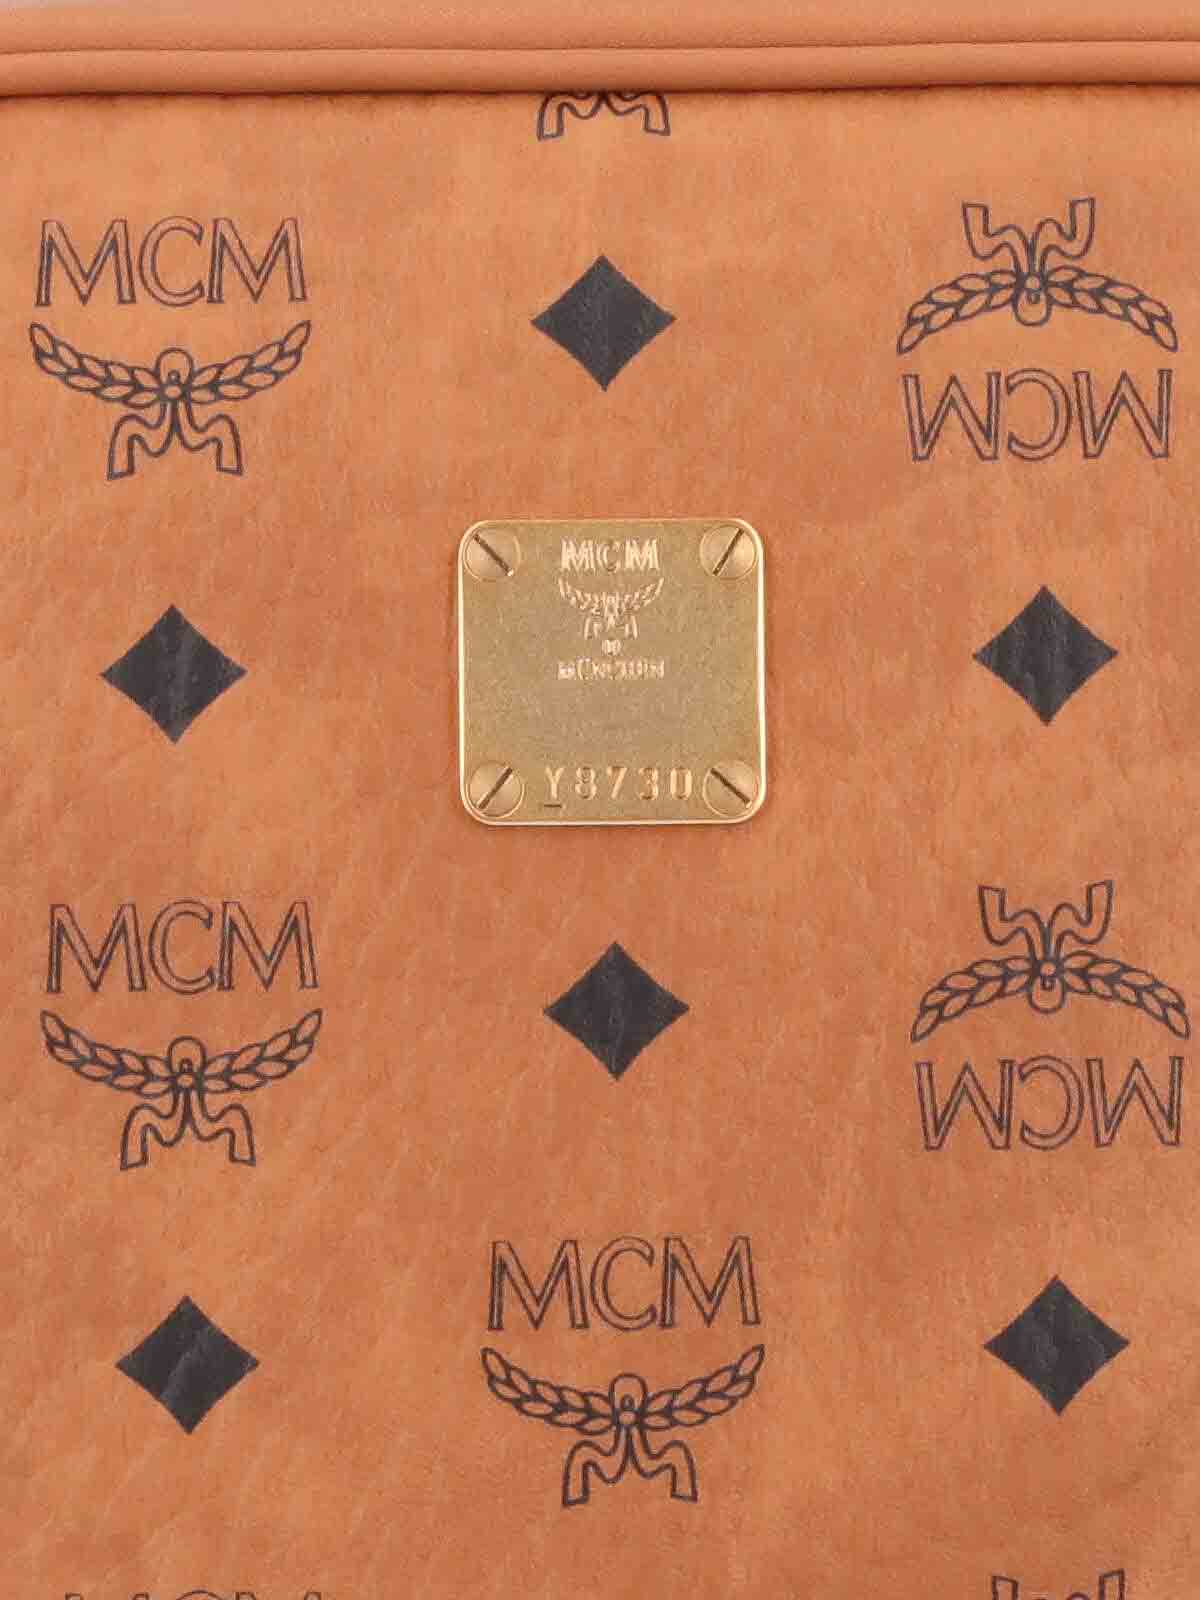 Shop Mcm Shoulder Bag In Brown